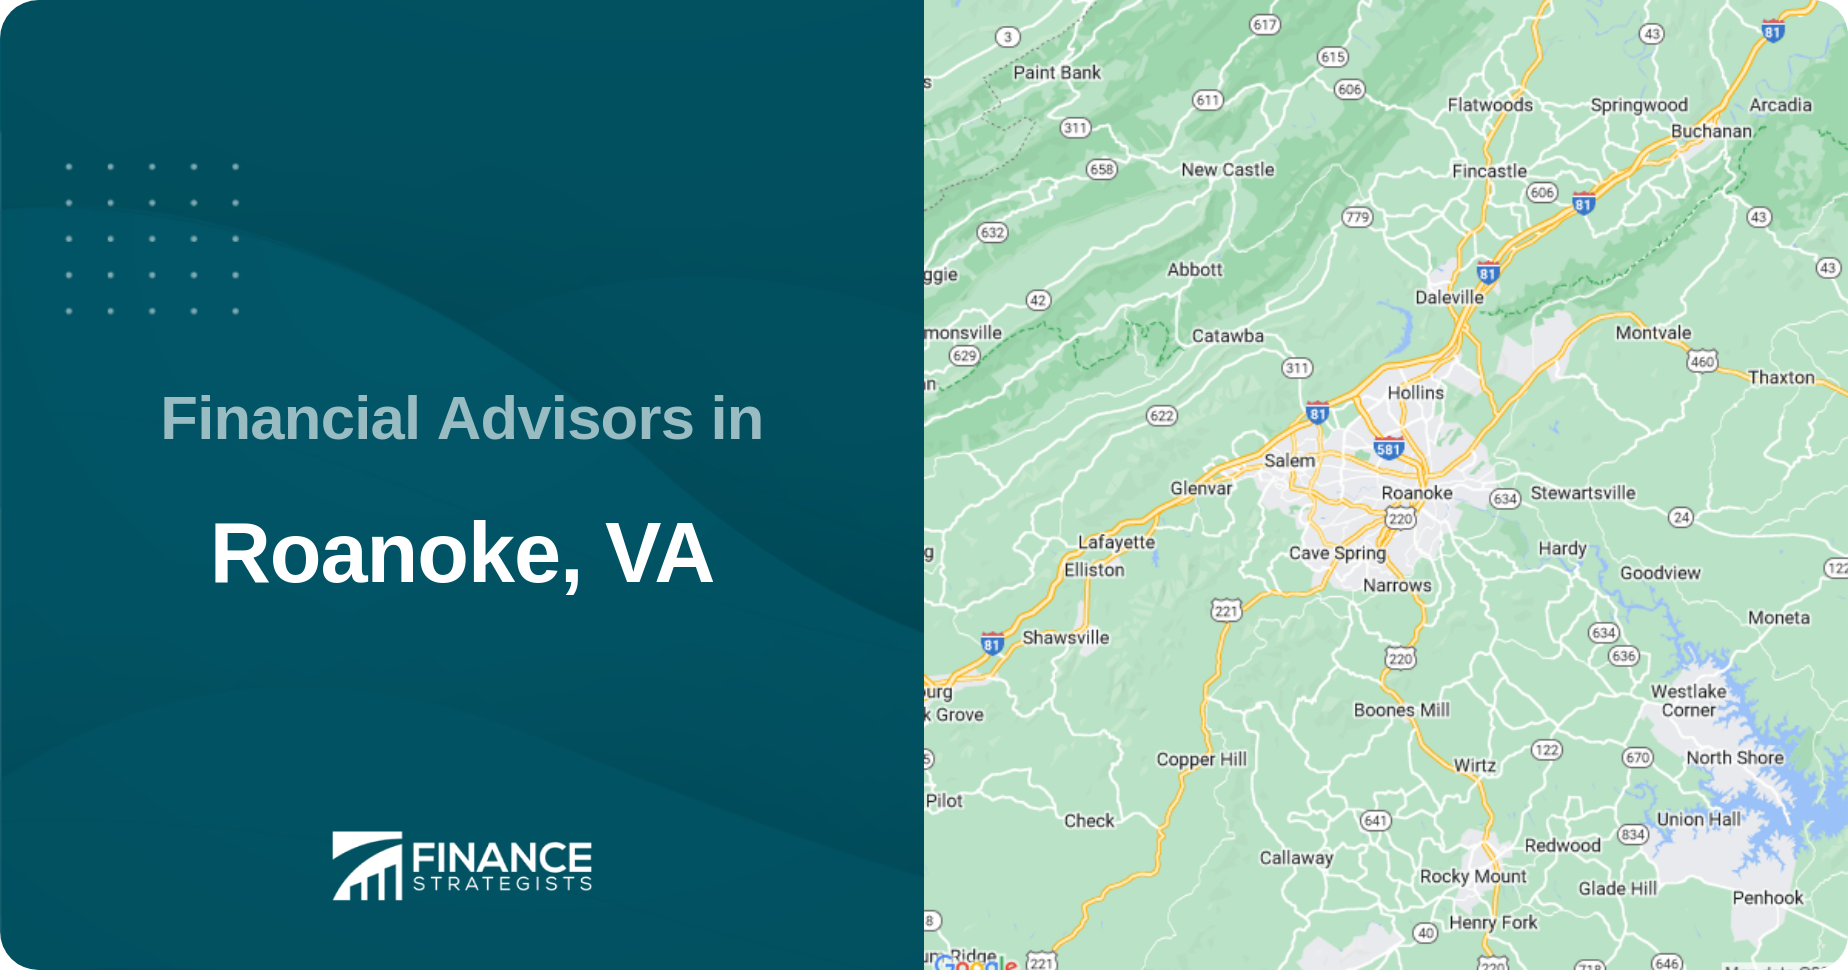 Financial Advisors in Roanoke, VA